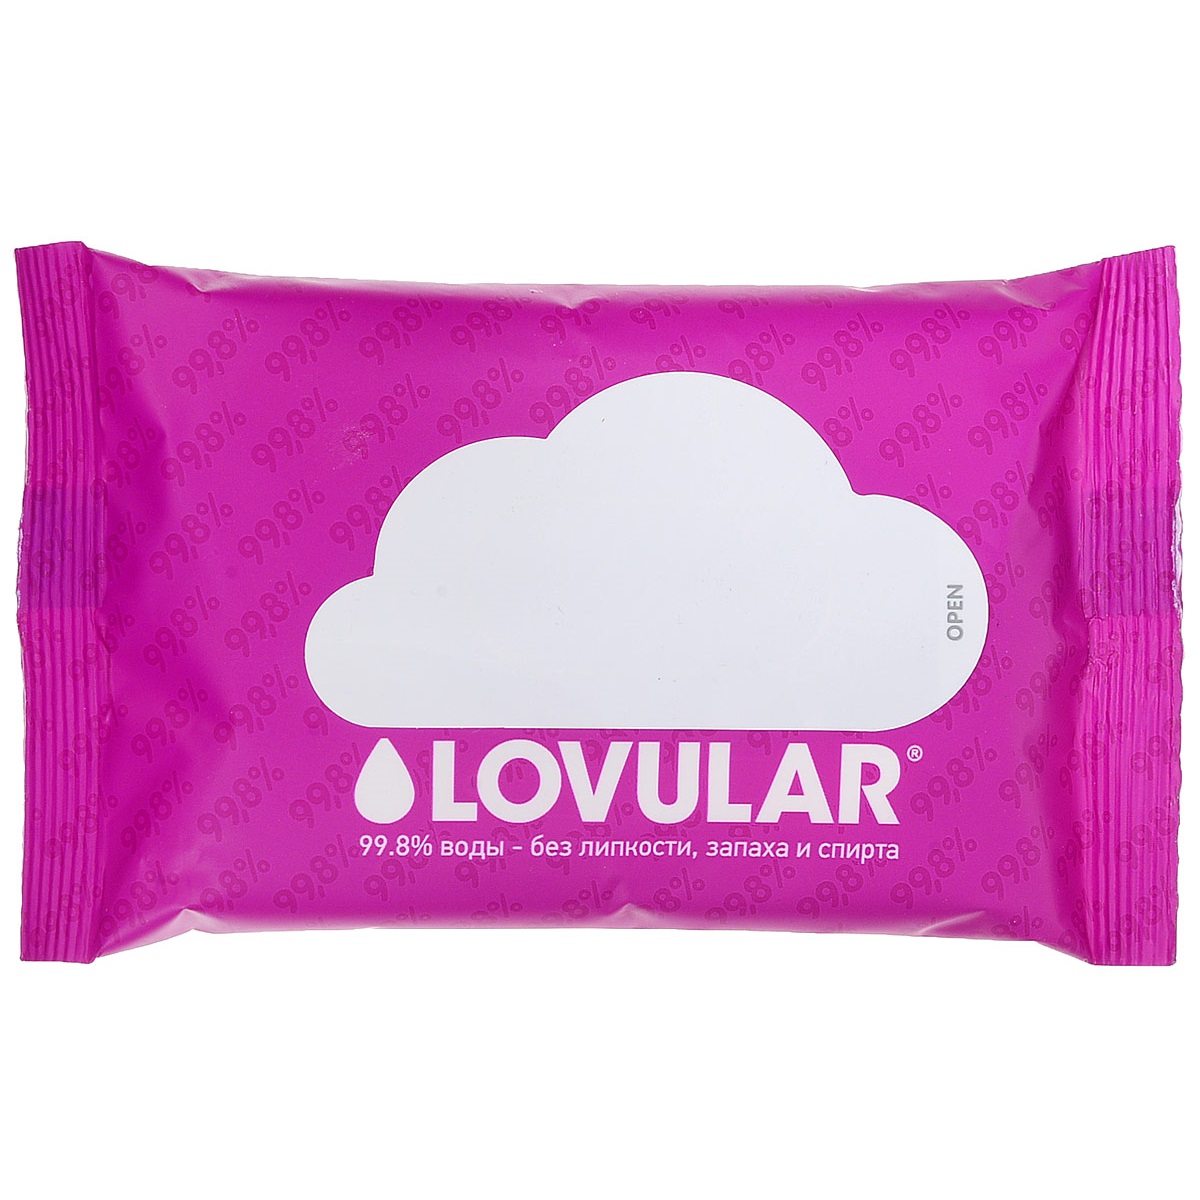 Влажные салфетки 10 шт. в упаковке Lovular от CookHouse